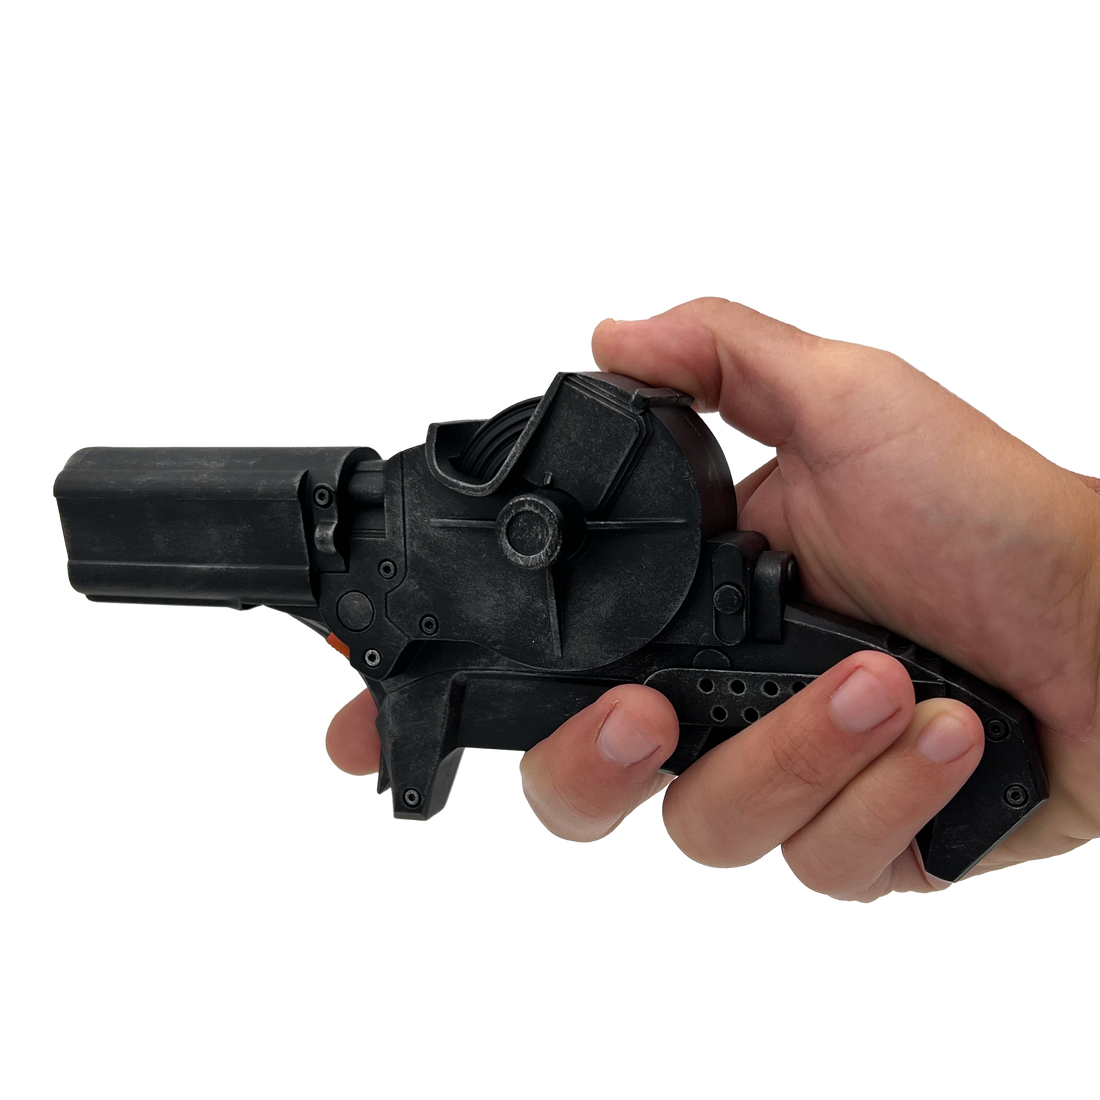 Cap Gun Unboxing 2022 - All Metal Cap Revolver 